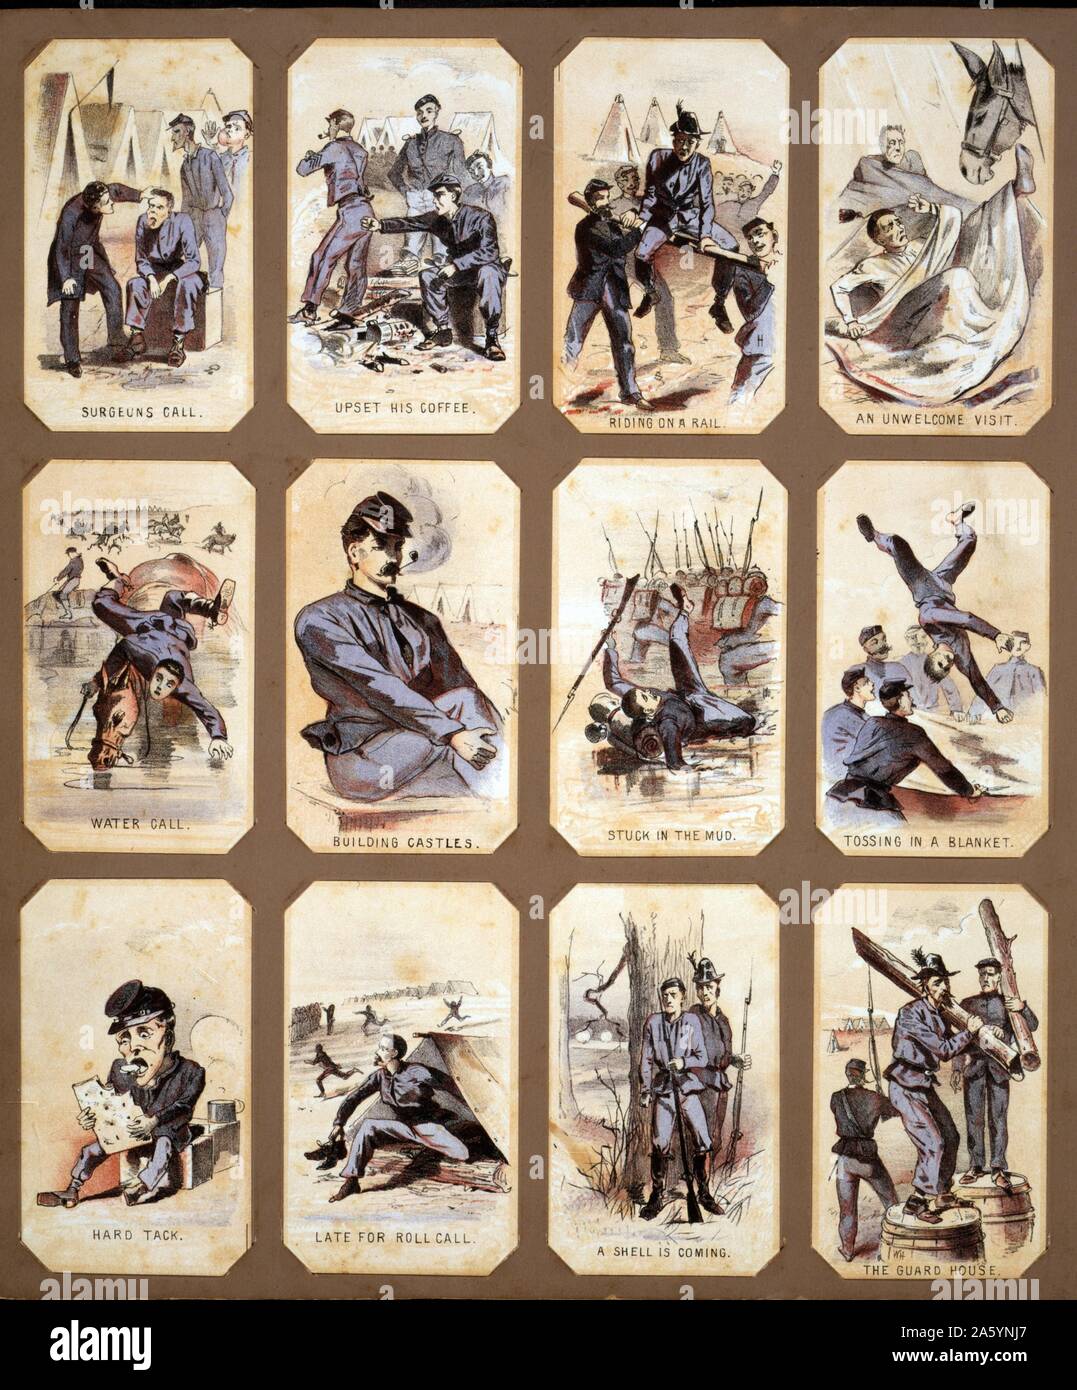 Das Leben im Camp, Teil 1 von Winslow Homer, 1836-1910, US-amerikanischer Künstler. 1864. chromolithograph souvenir Karten zeigt das tägliche Leben der Soldaten der Union während des Bürgerkriegs Stockfoto